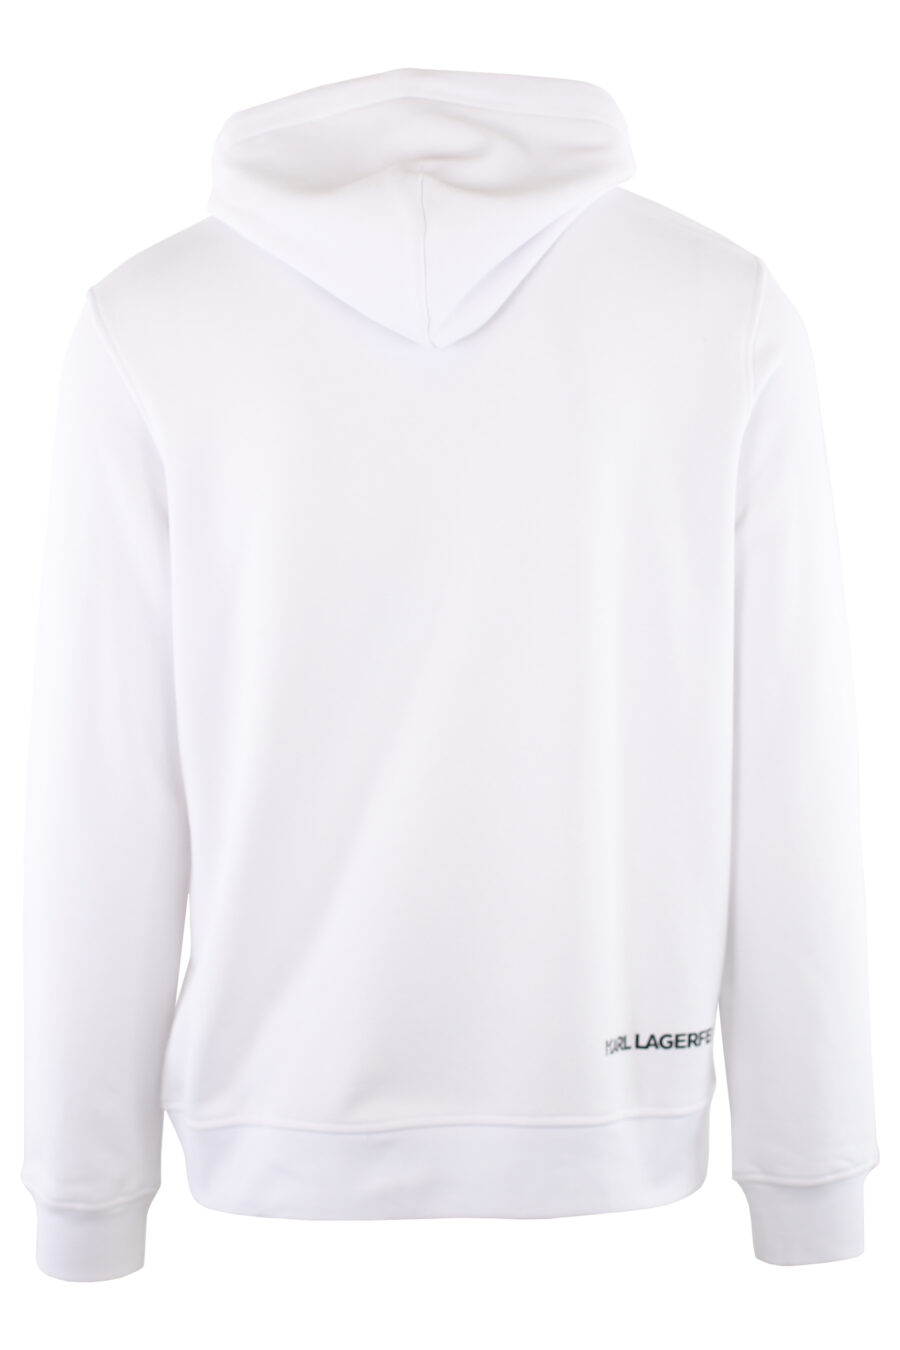 Weißes Sweatshirt mit Kapuze und Logo "ikonik" klein - IMG 7462